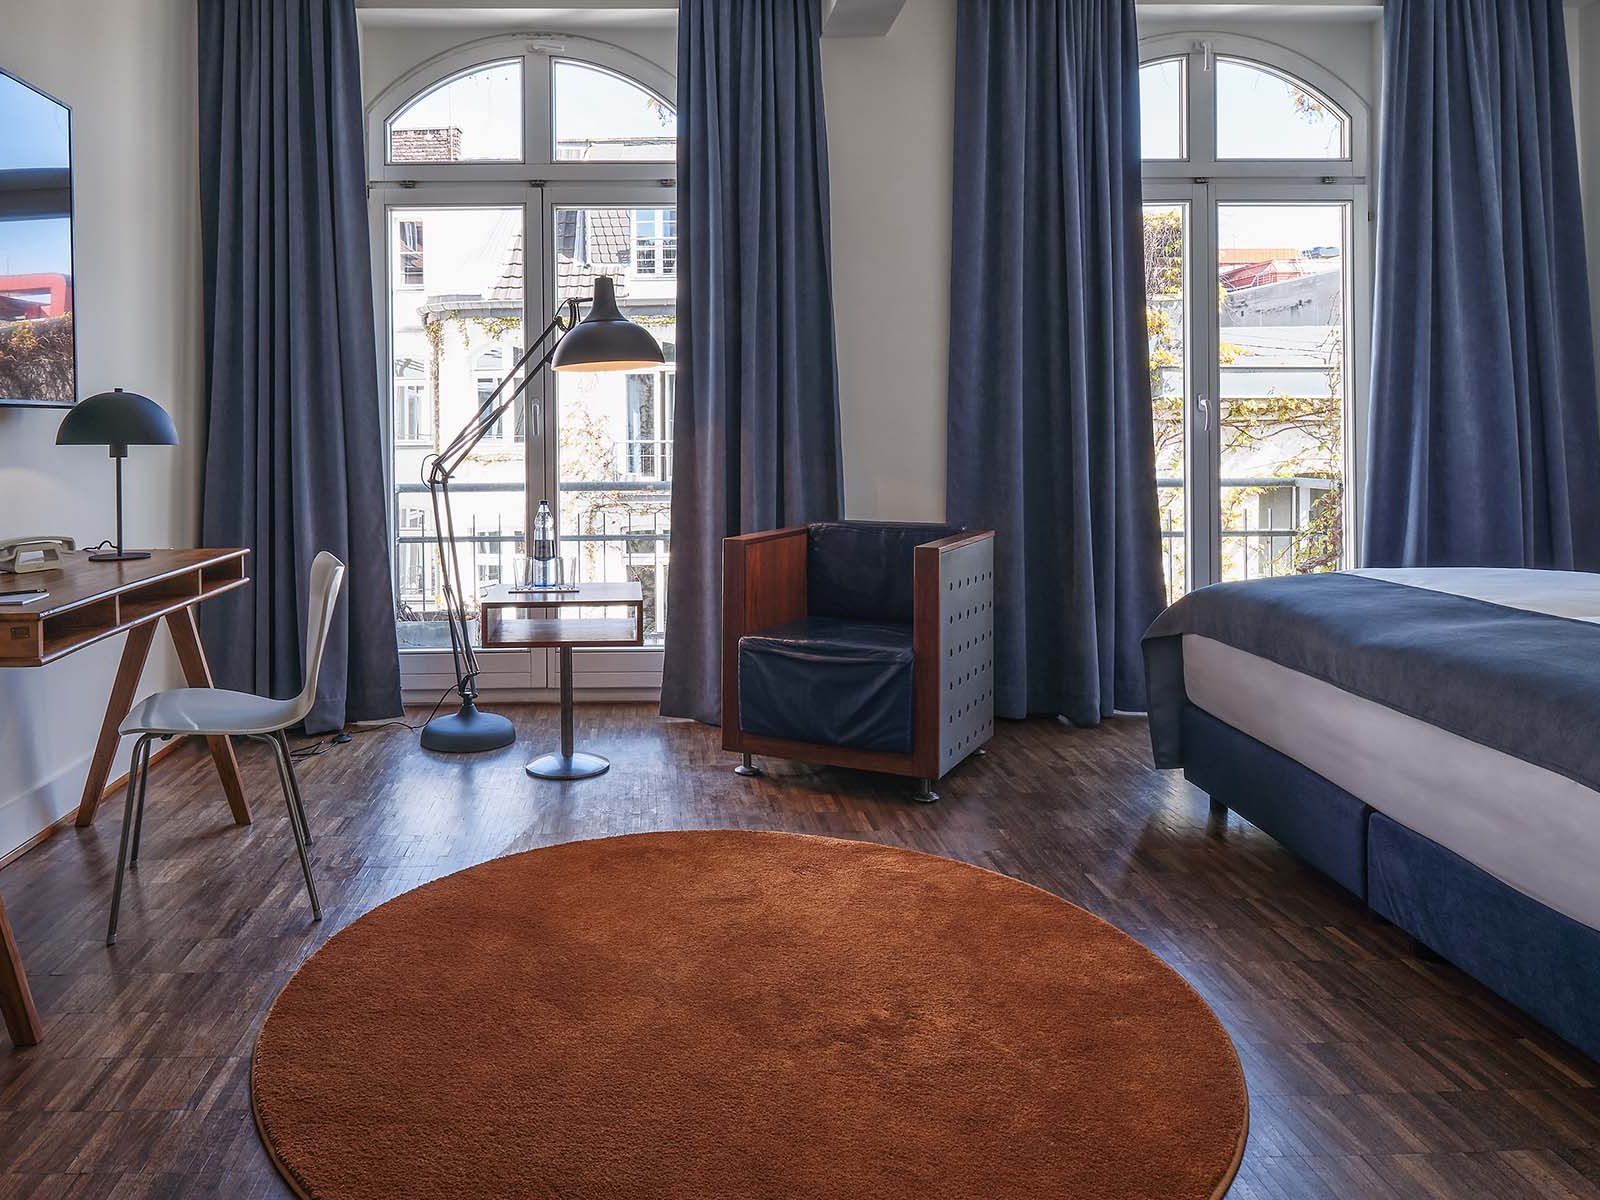 In Zimmern von 18 bis 45qm und in den Kategorien Classik, Premium, Prestige, Apartment und Superior-Apartment können die Gäste im Hotel übernachten.